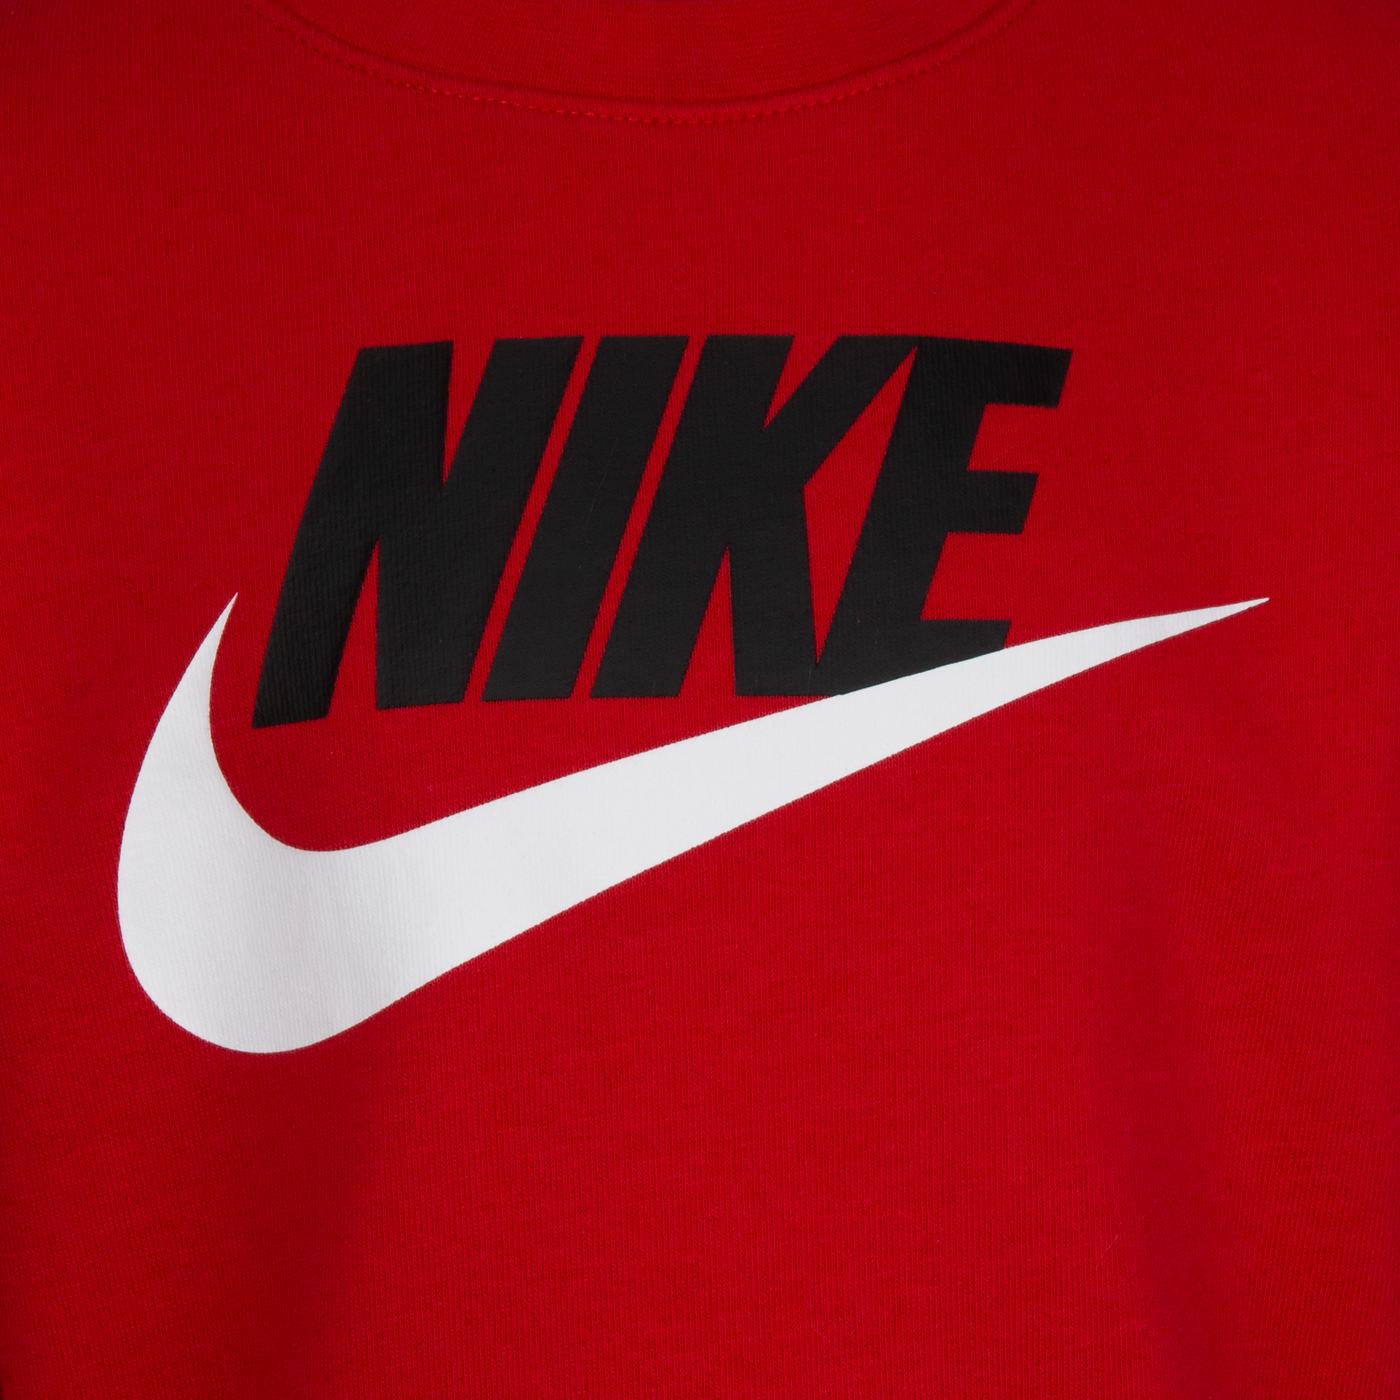 Nike Club Crewneck Sweatshirt Sweatshirt Nike   